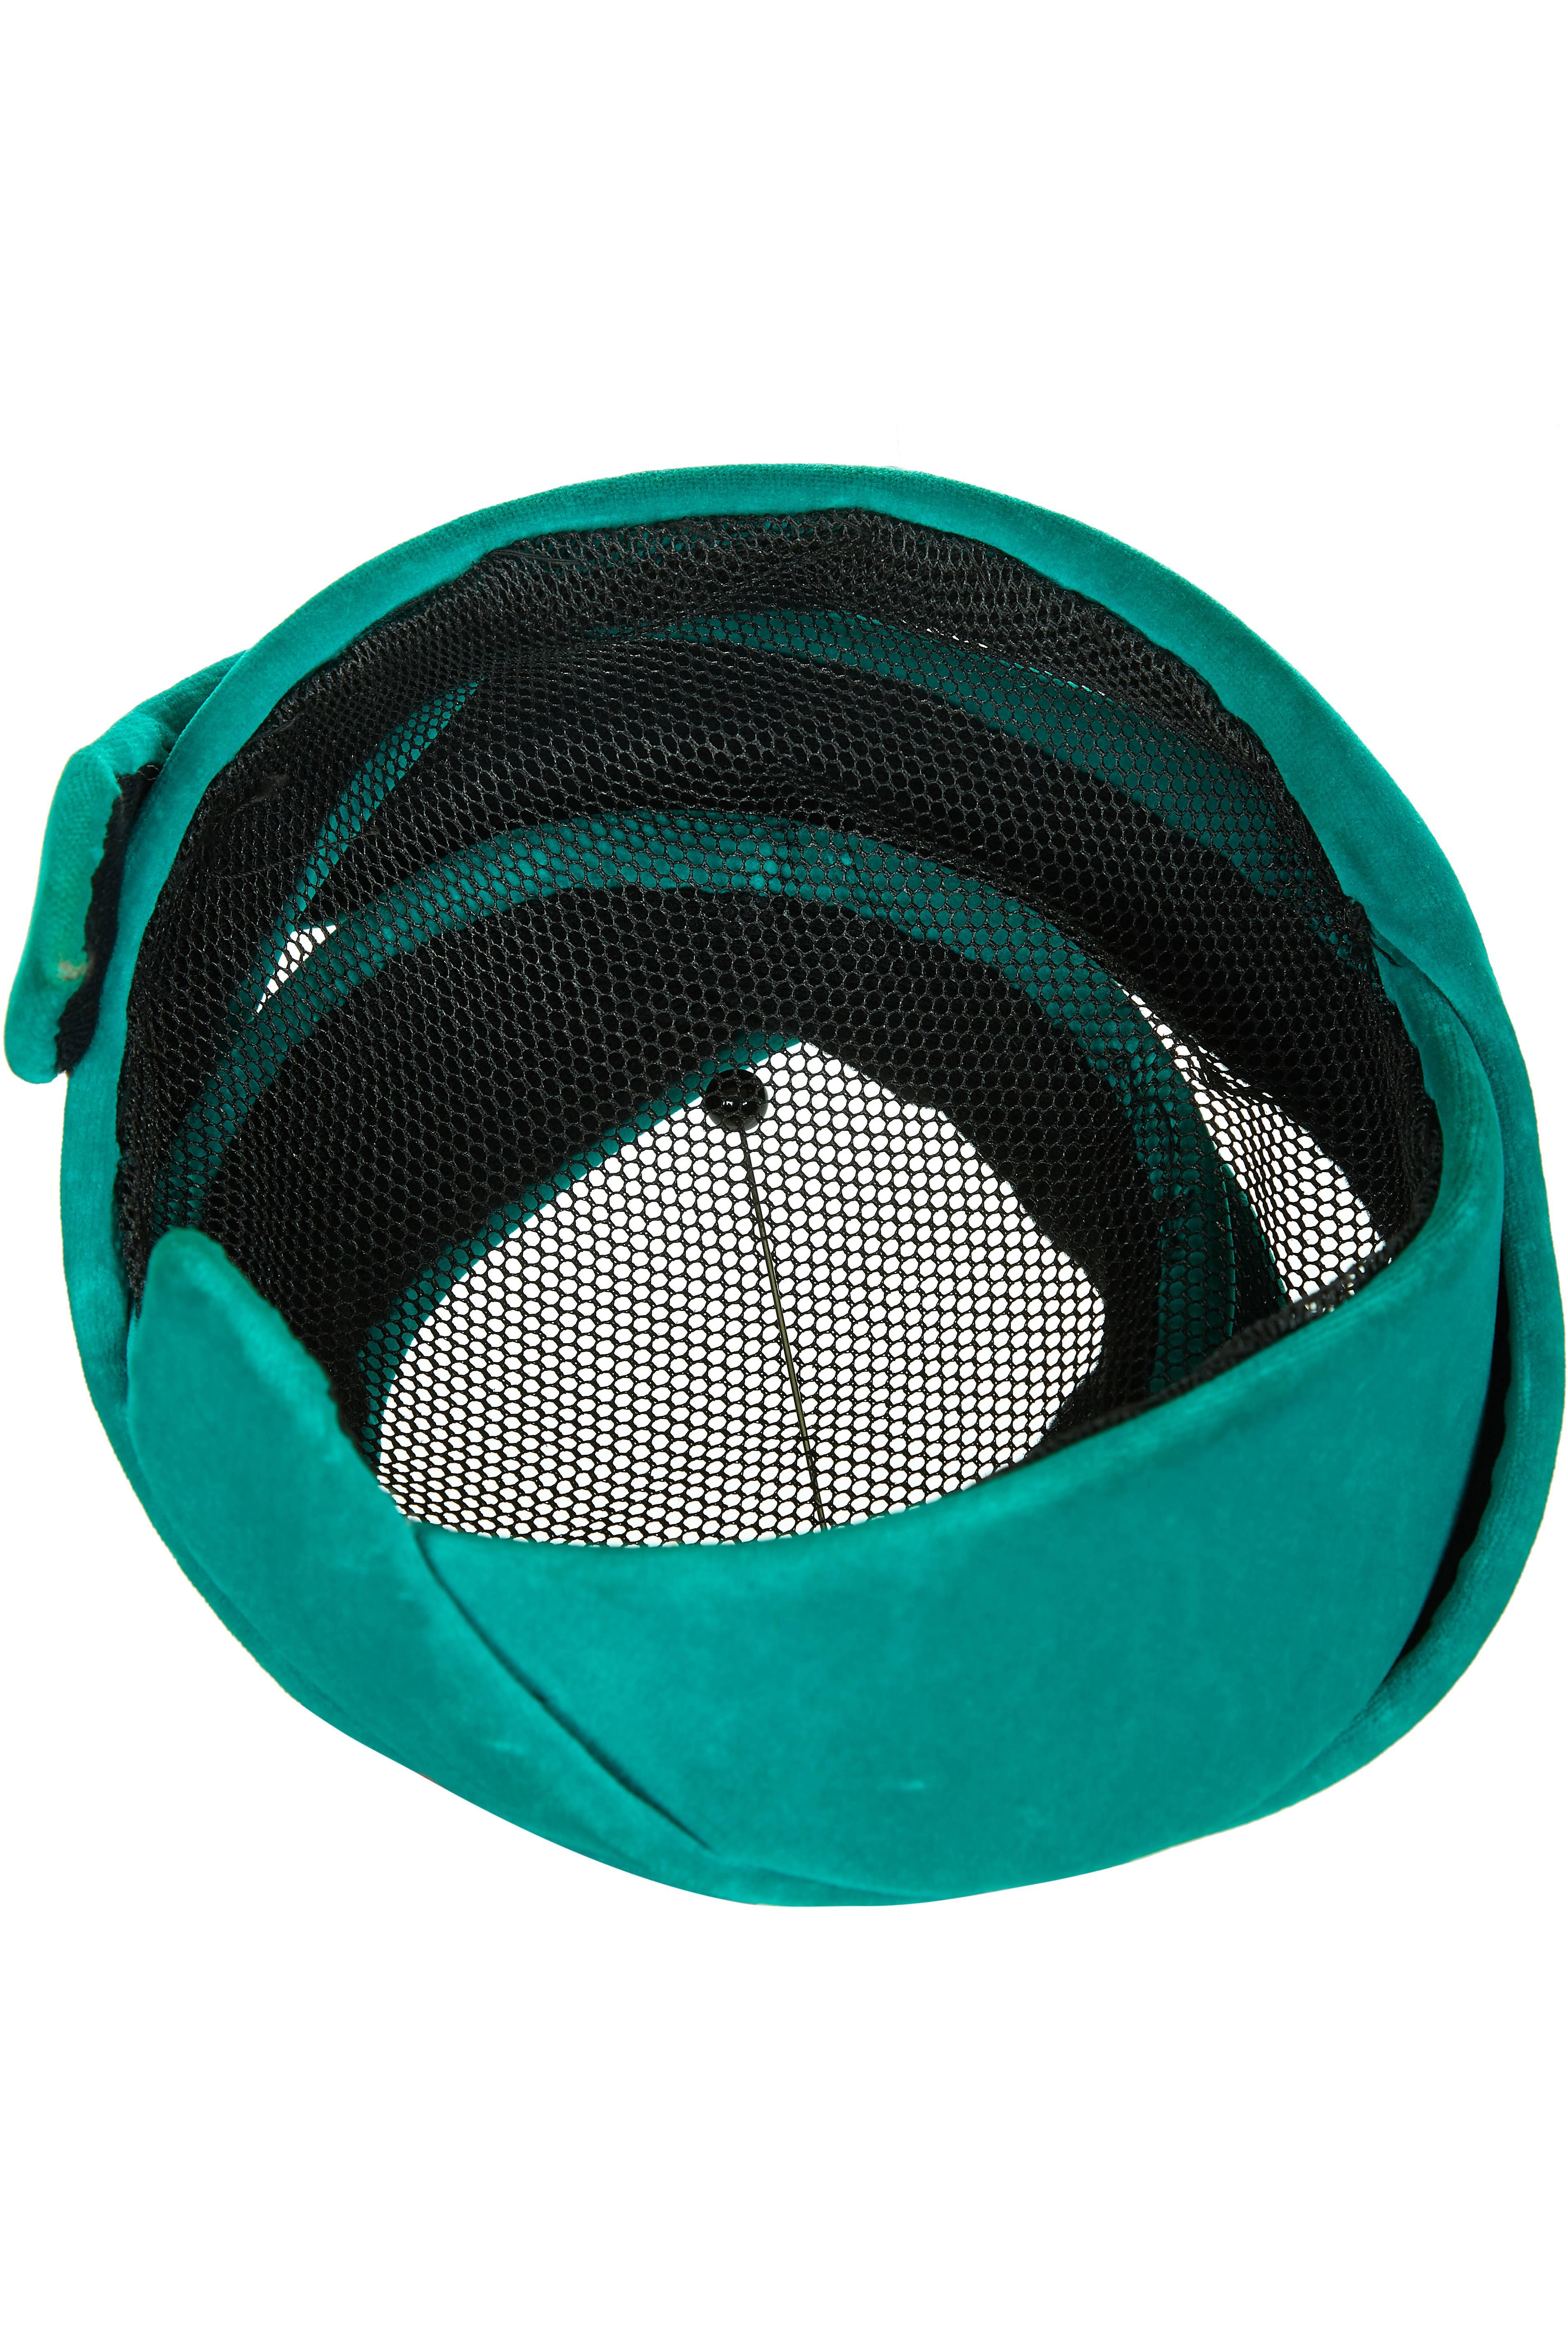 Fabelhafter abstrakter, von einem Turban inspirierter Hut aus den 1950er Jahren, bestehend aus einem grünen Samtband, das um eine schwarze Netzbasis gewickelt ist.  Es gibt keine Hersteller-Etiketten, aber es ist ein sehr einzigartiges und